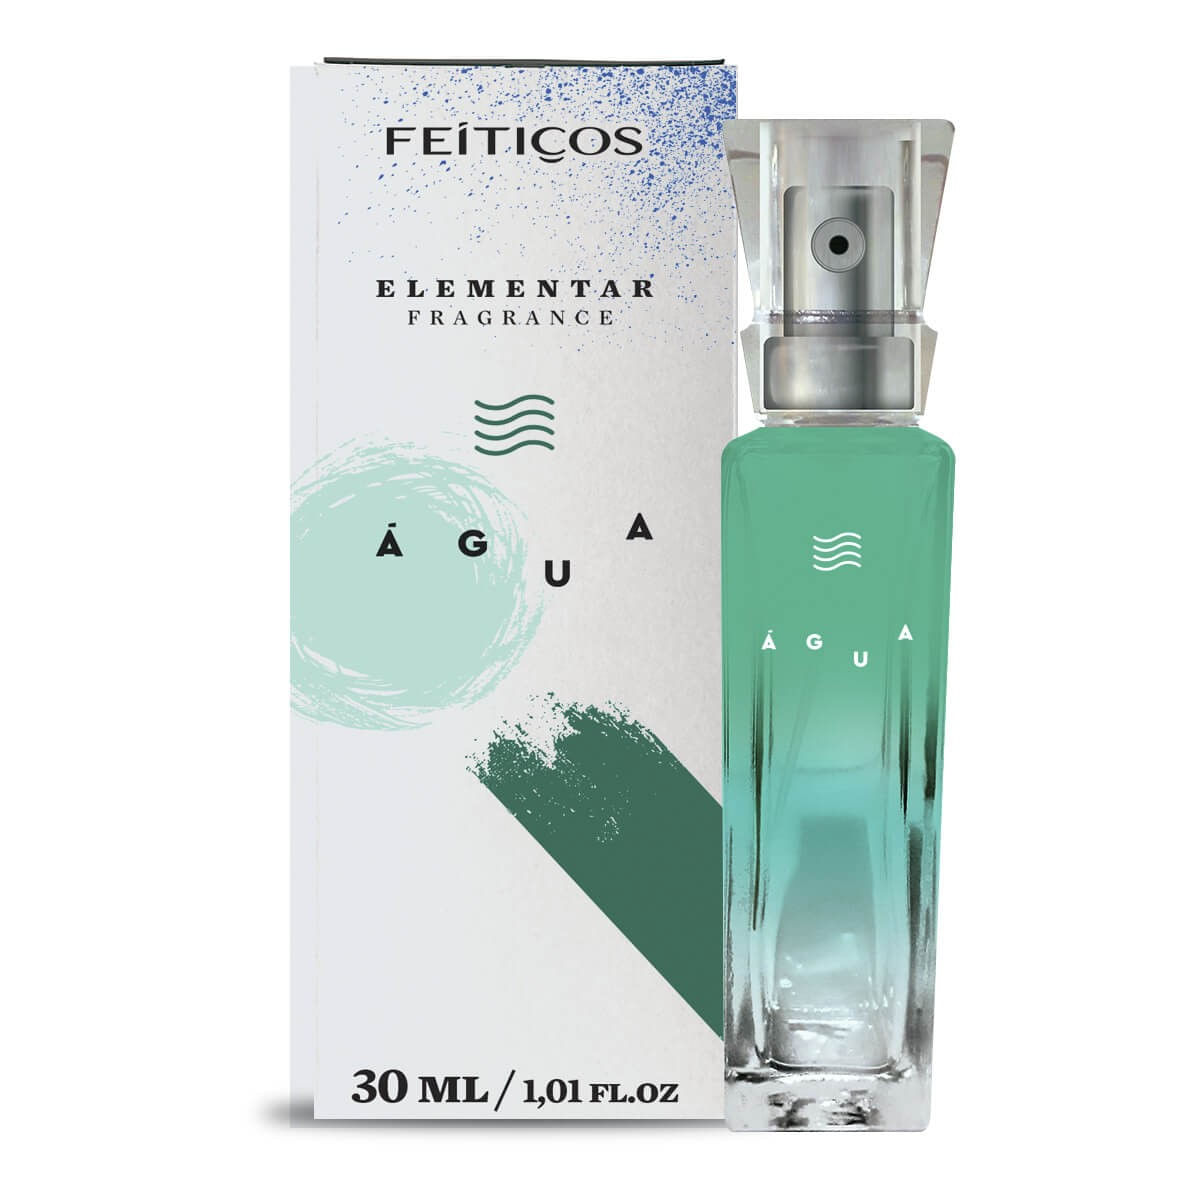 Elementar Fragrance Perfume dos Signos 30ml Feitiços Aromáticos